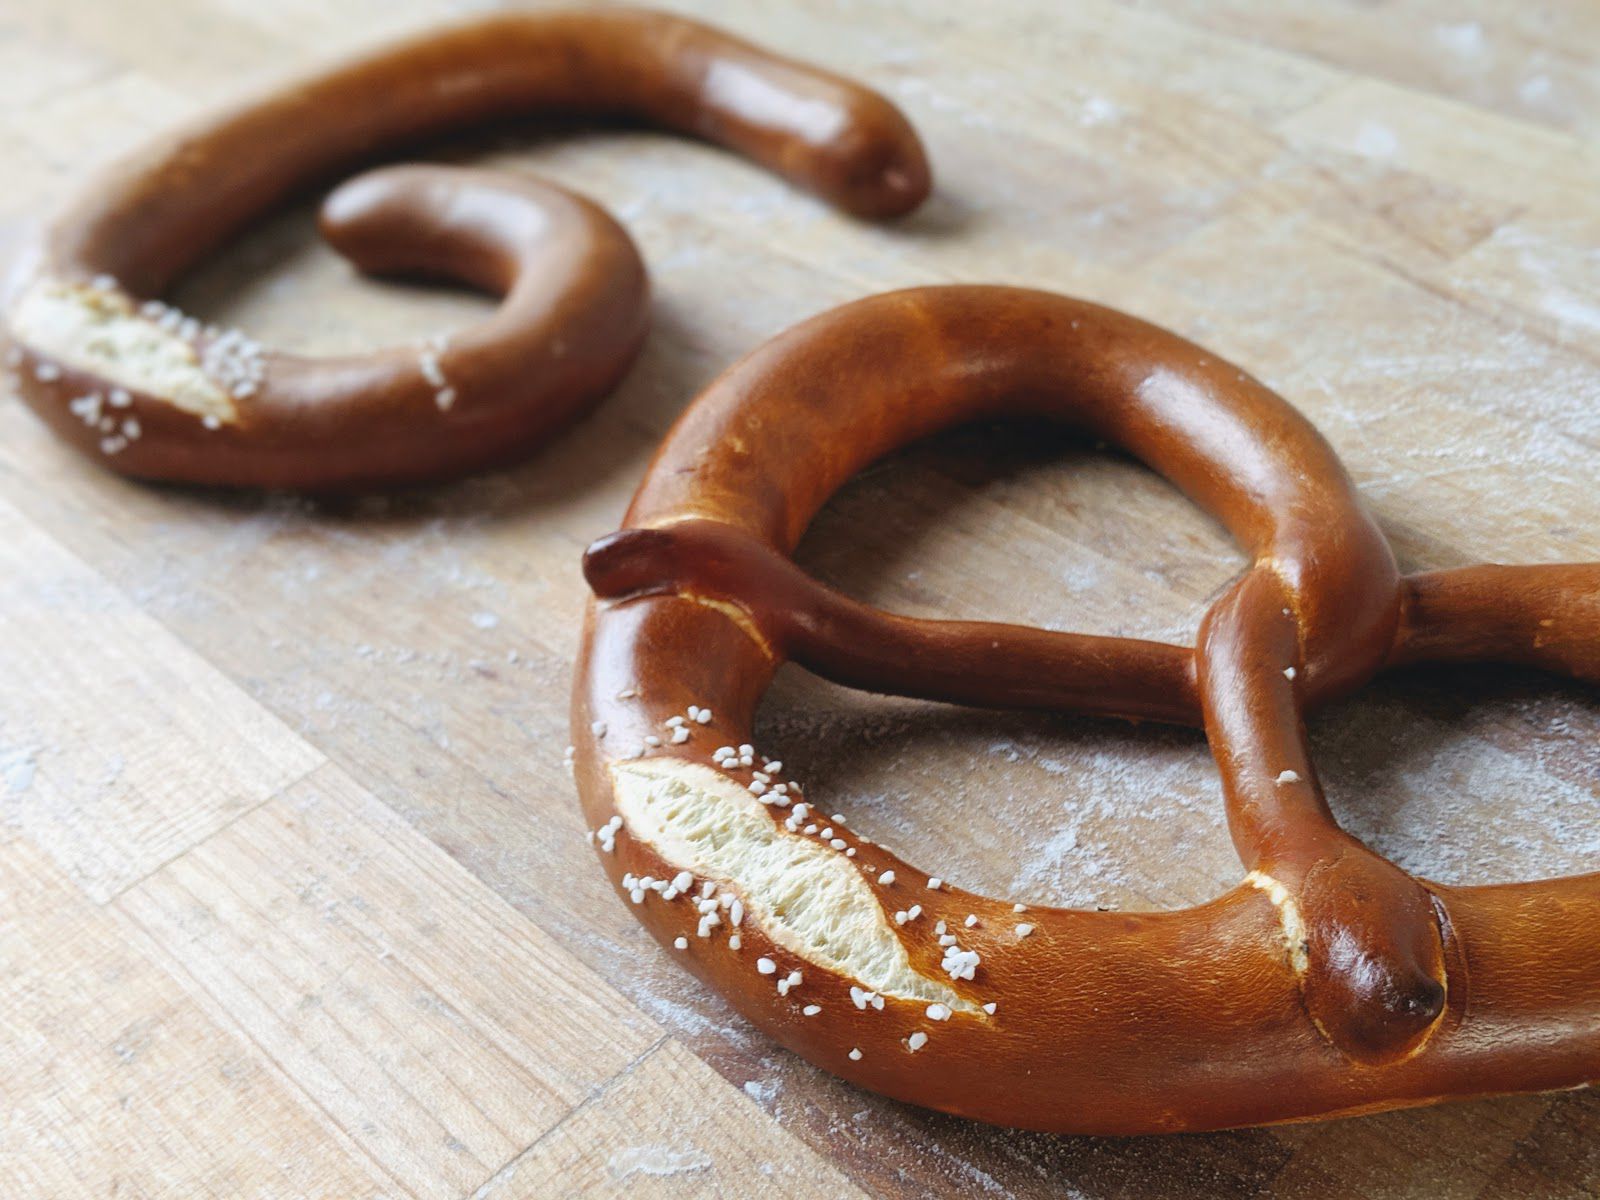 La forma en corazón y con un nudo en medio es una de las características más reconocibles de los pretzels (Foto: Google)